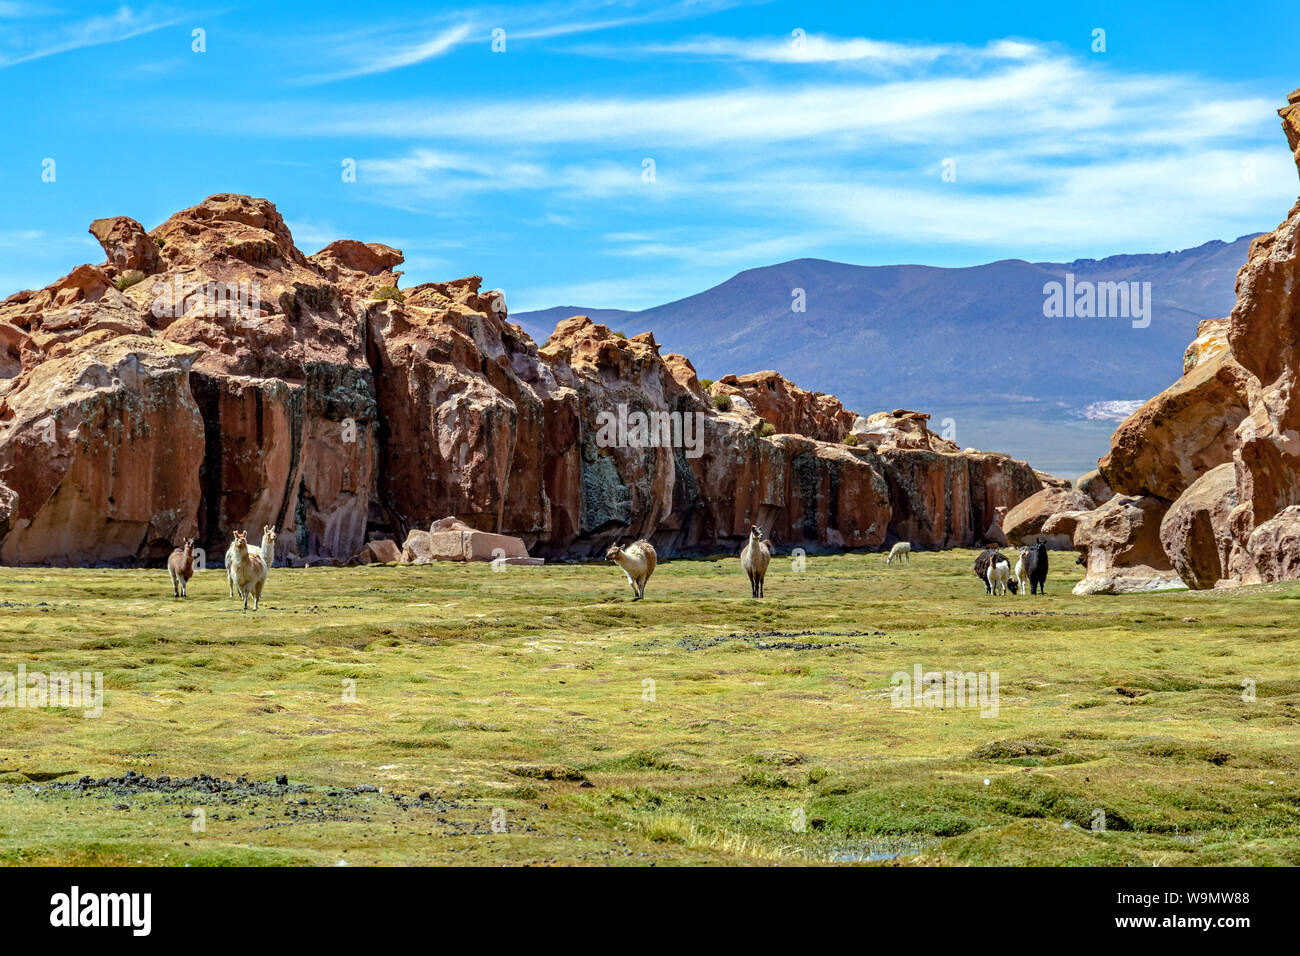 Paysage verdoyant et tranquille avec les alpagas et les lamas, geological formations rocheuses et ciel bleu sur l'Altiplano, Cordillère des Andes de la bolivie Banque D'Images